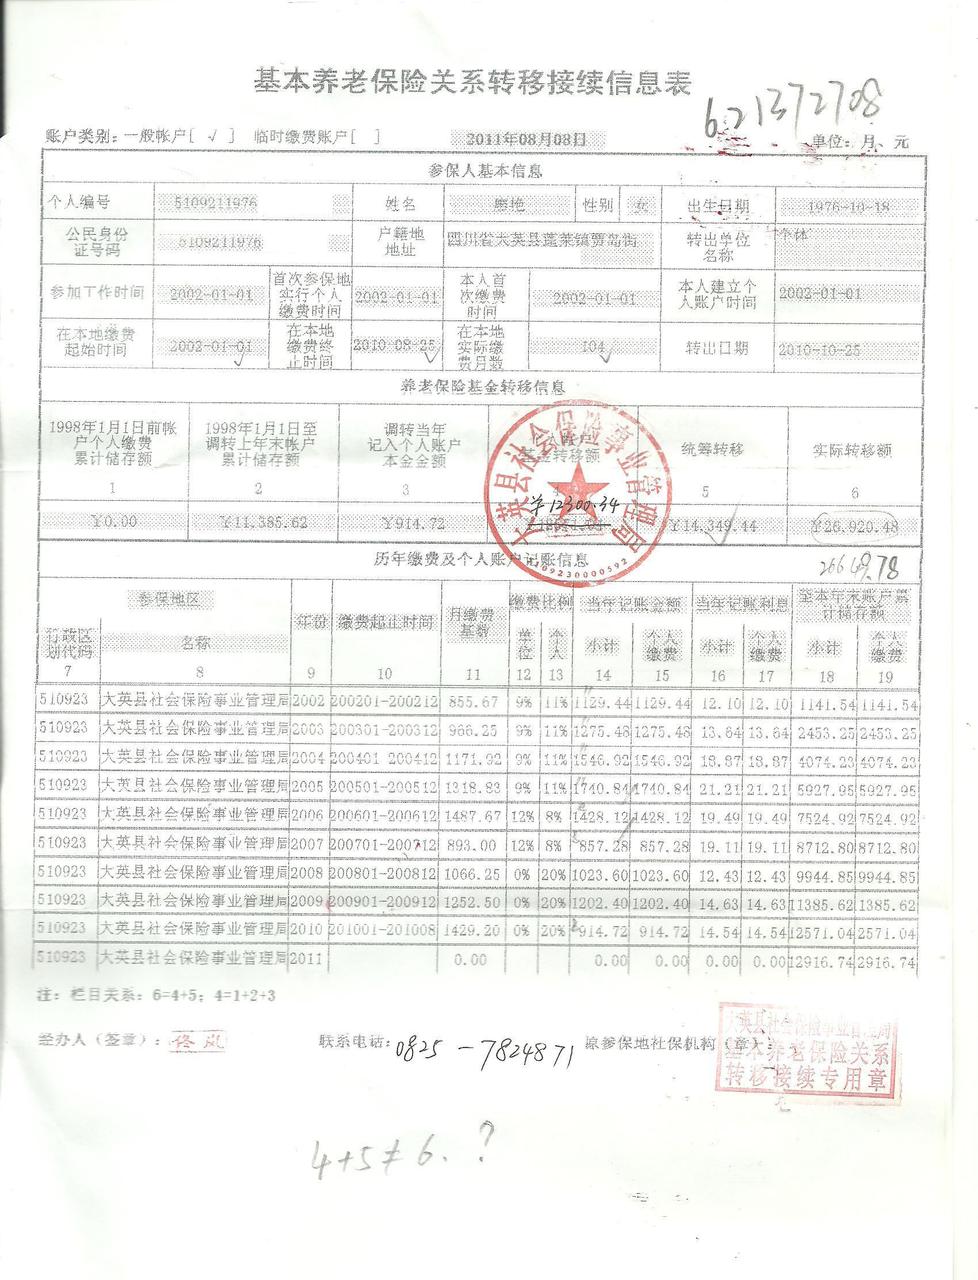 【社保转移】15年在深圳工作,社保买了不够一年,但是工作了一年然后